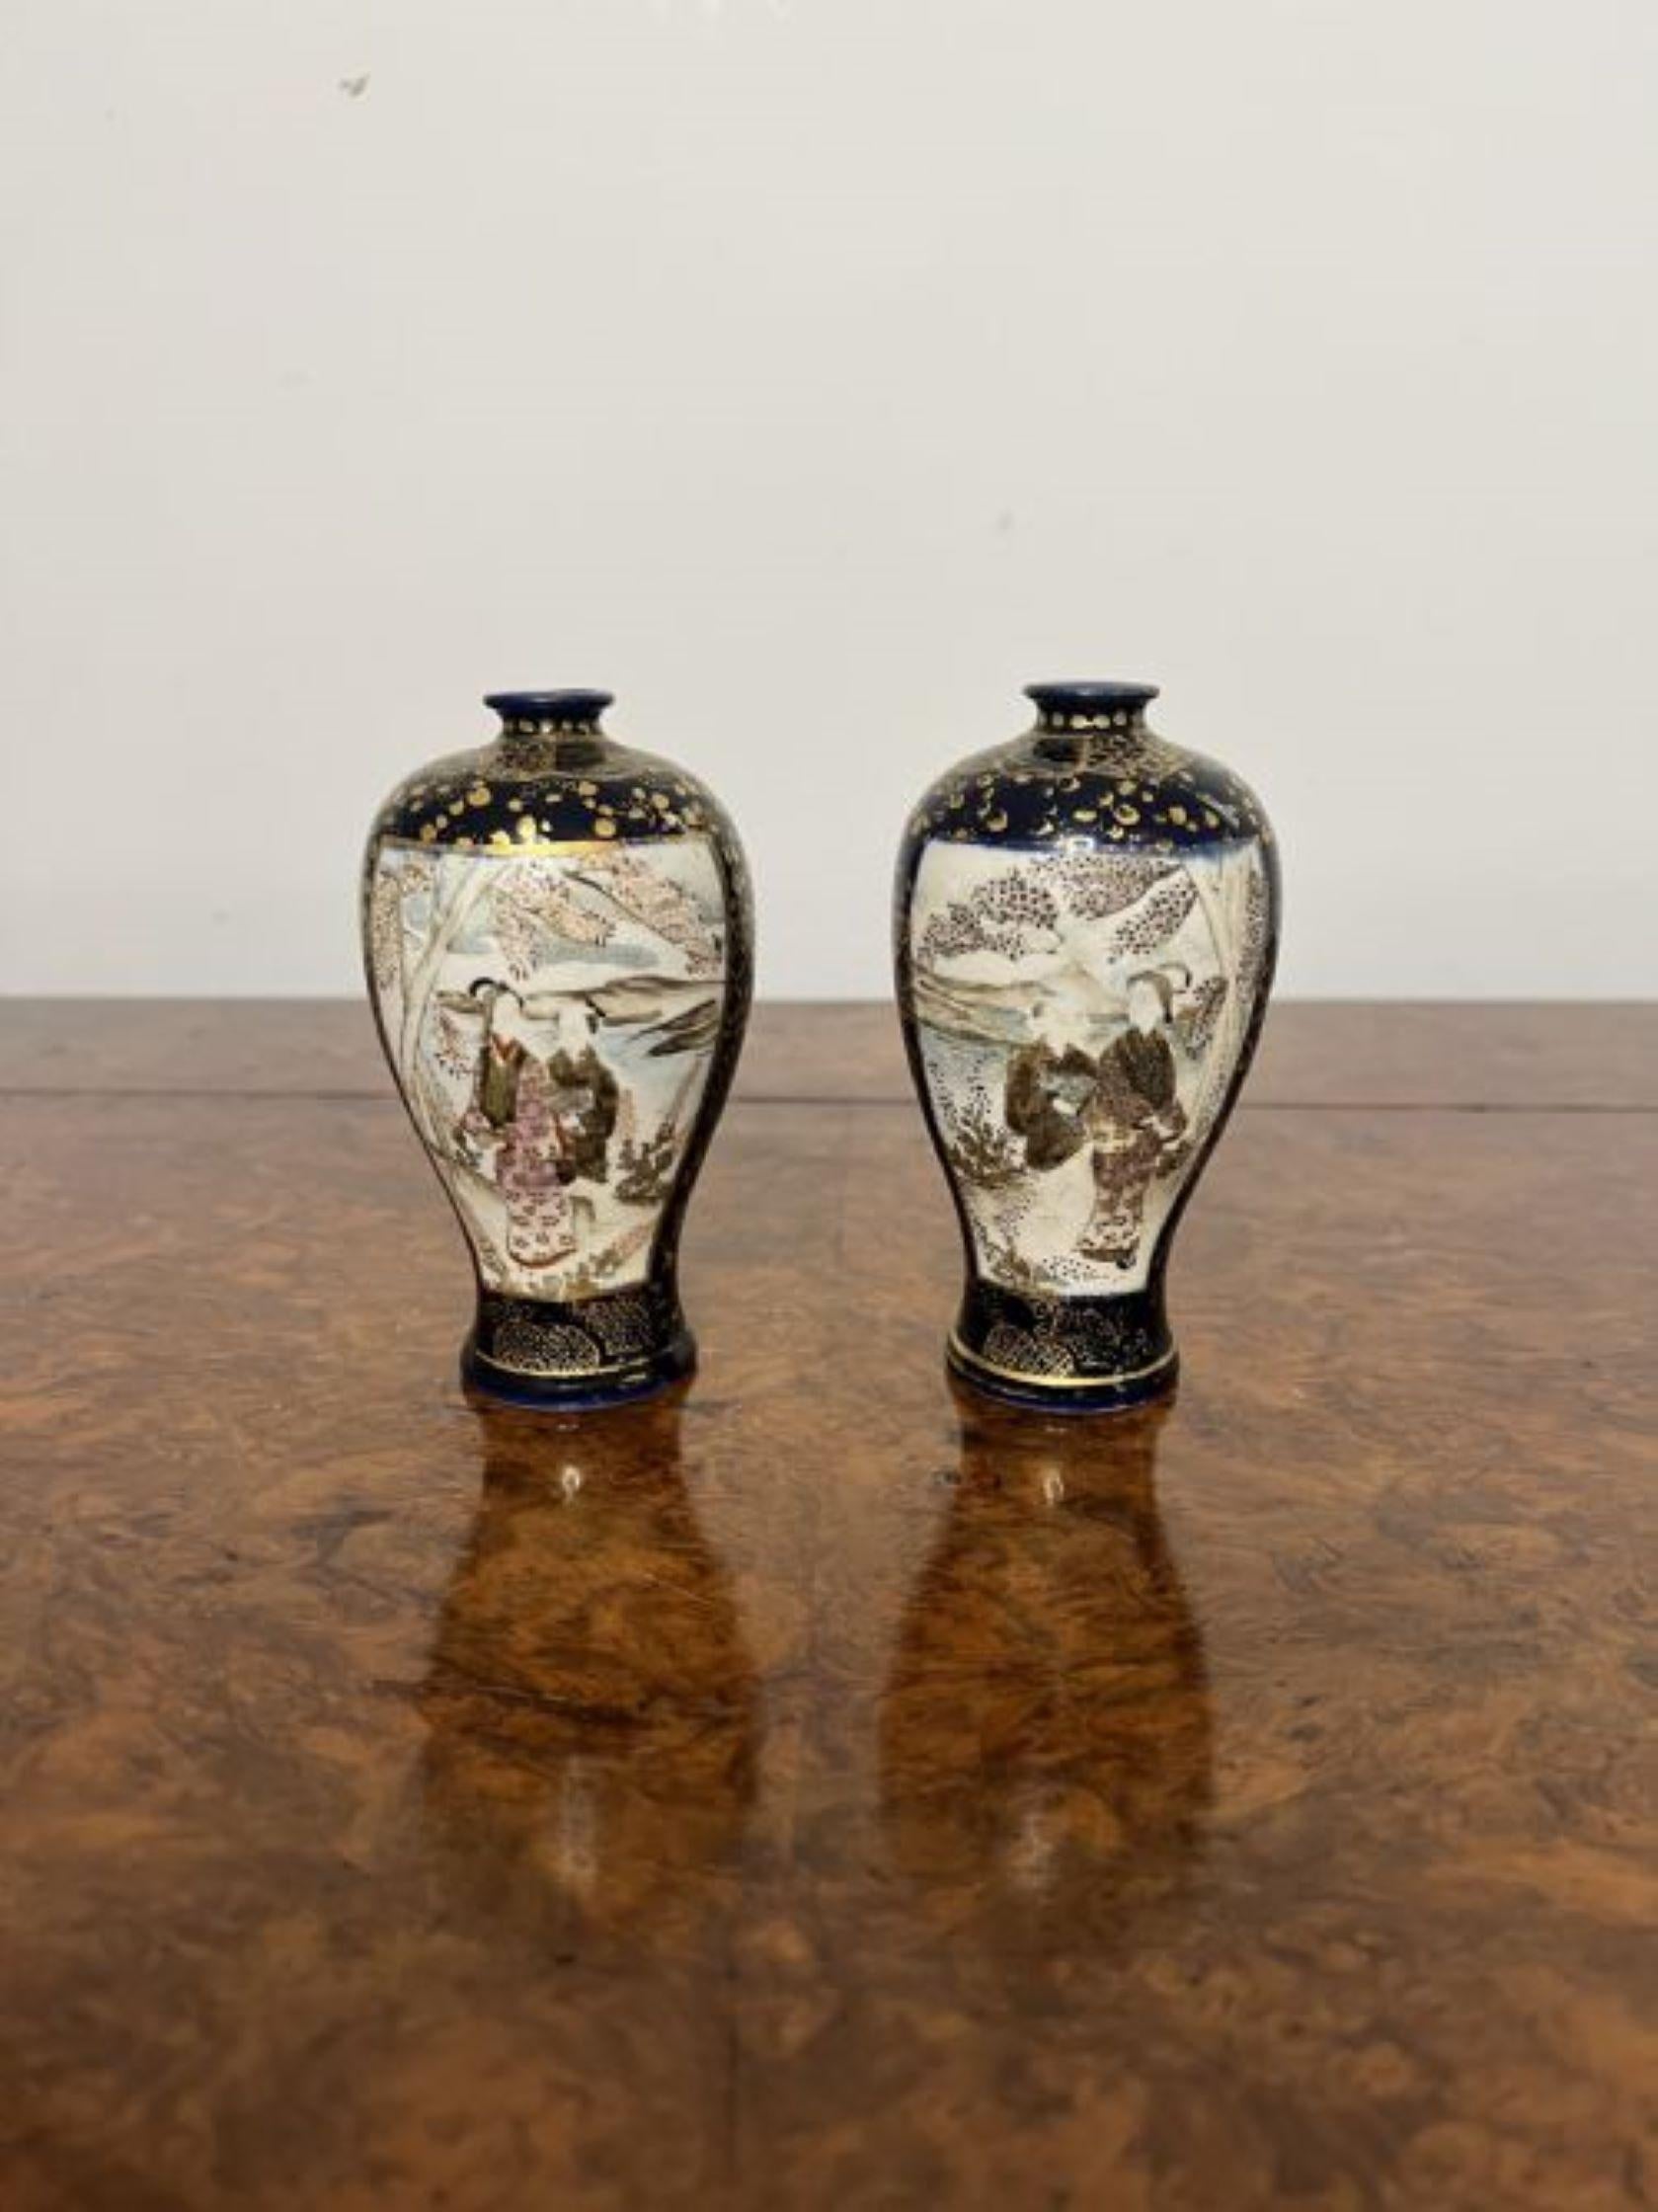 Fantastique paire de petits vases japonais anciens de qualité Whiting Une paire de vases japonais anciens de qualité Satsuma avec une magnifique décoration peinte à la main de scènes figuratives et de paysages dans des couleurs bleues, or, marron,